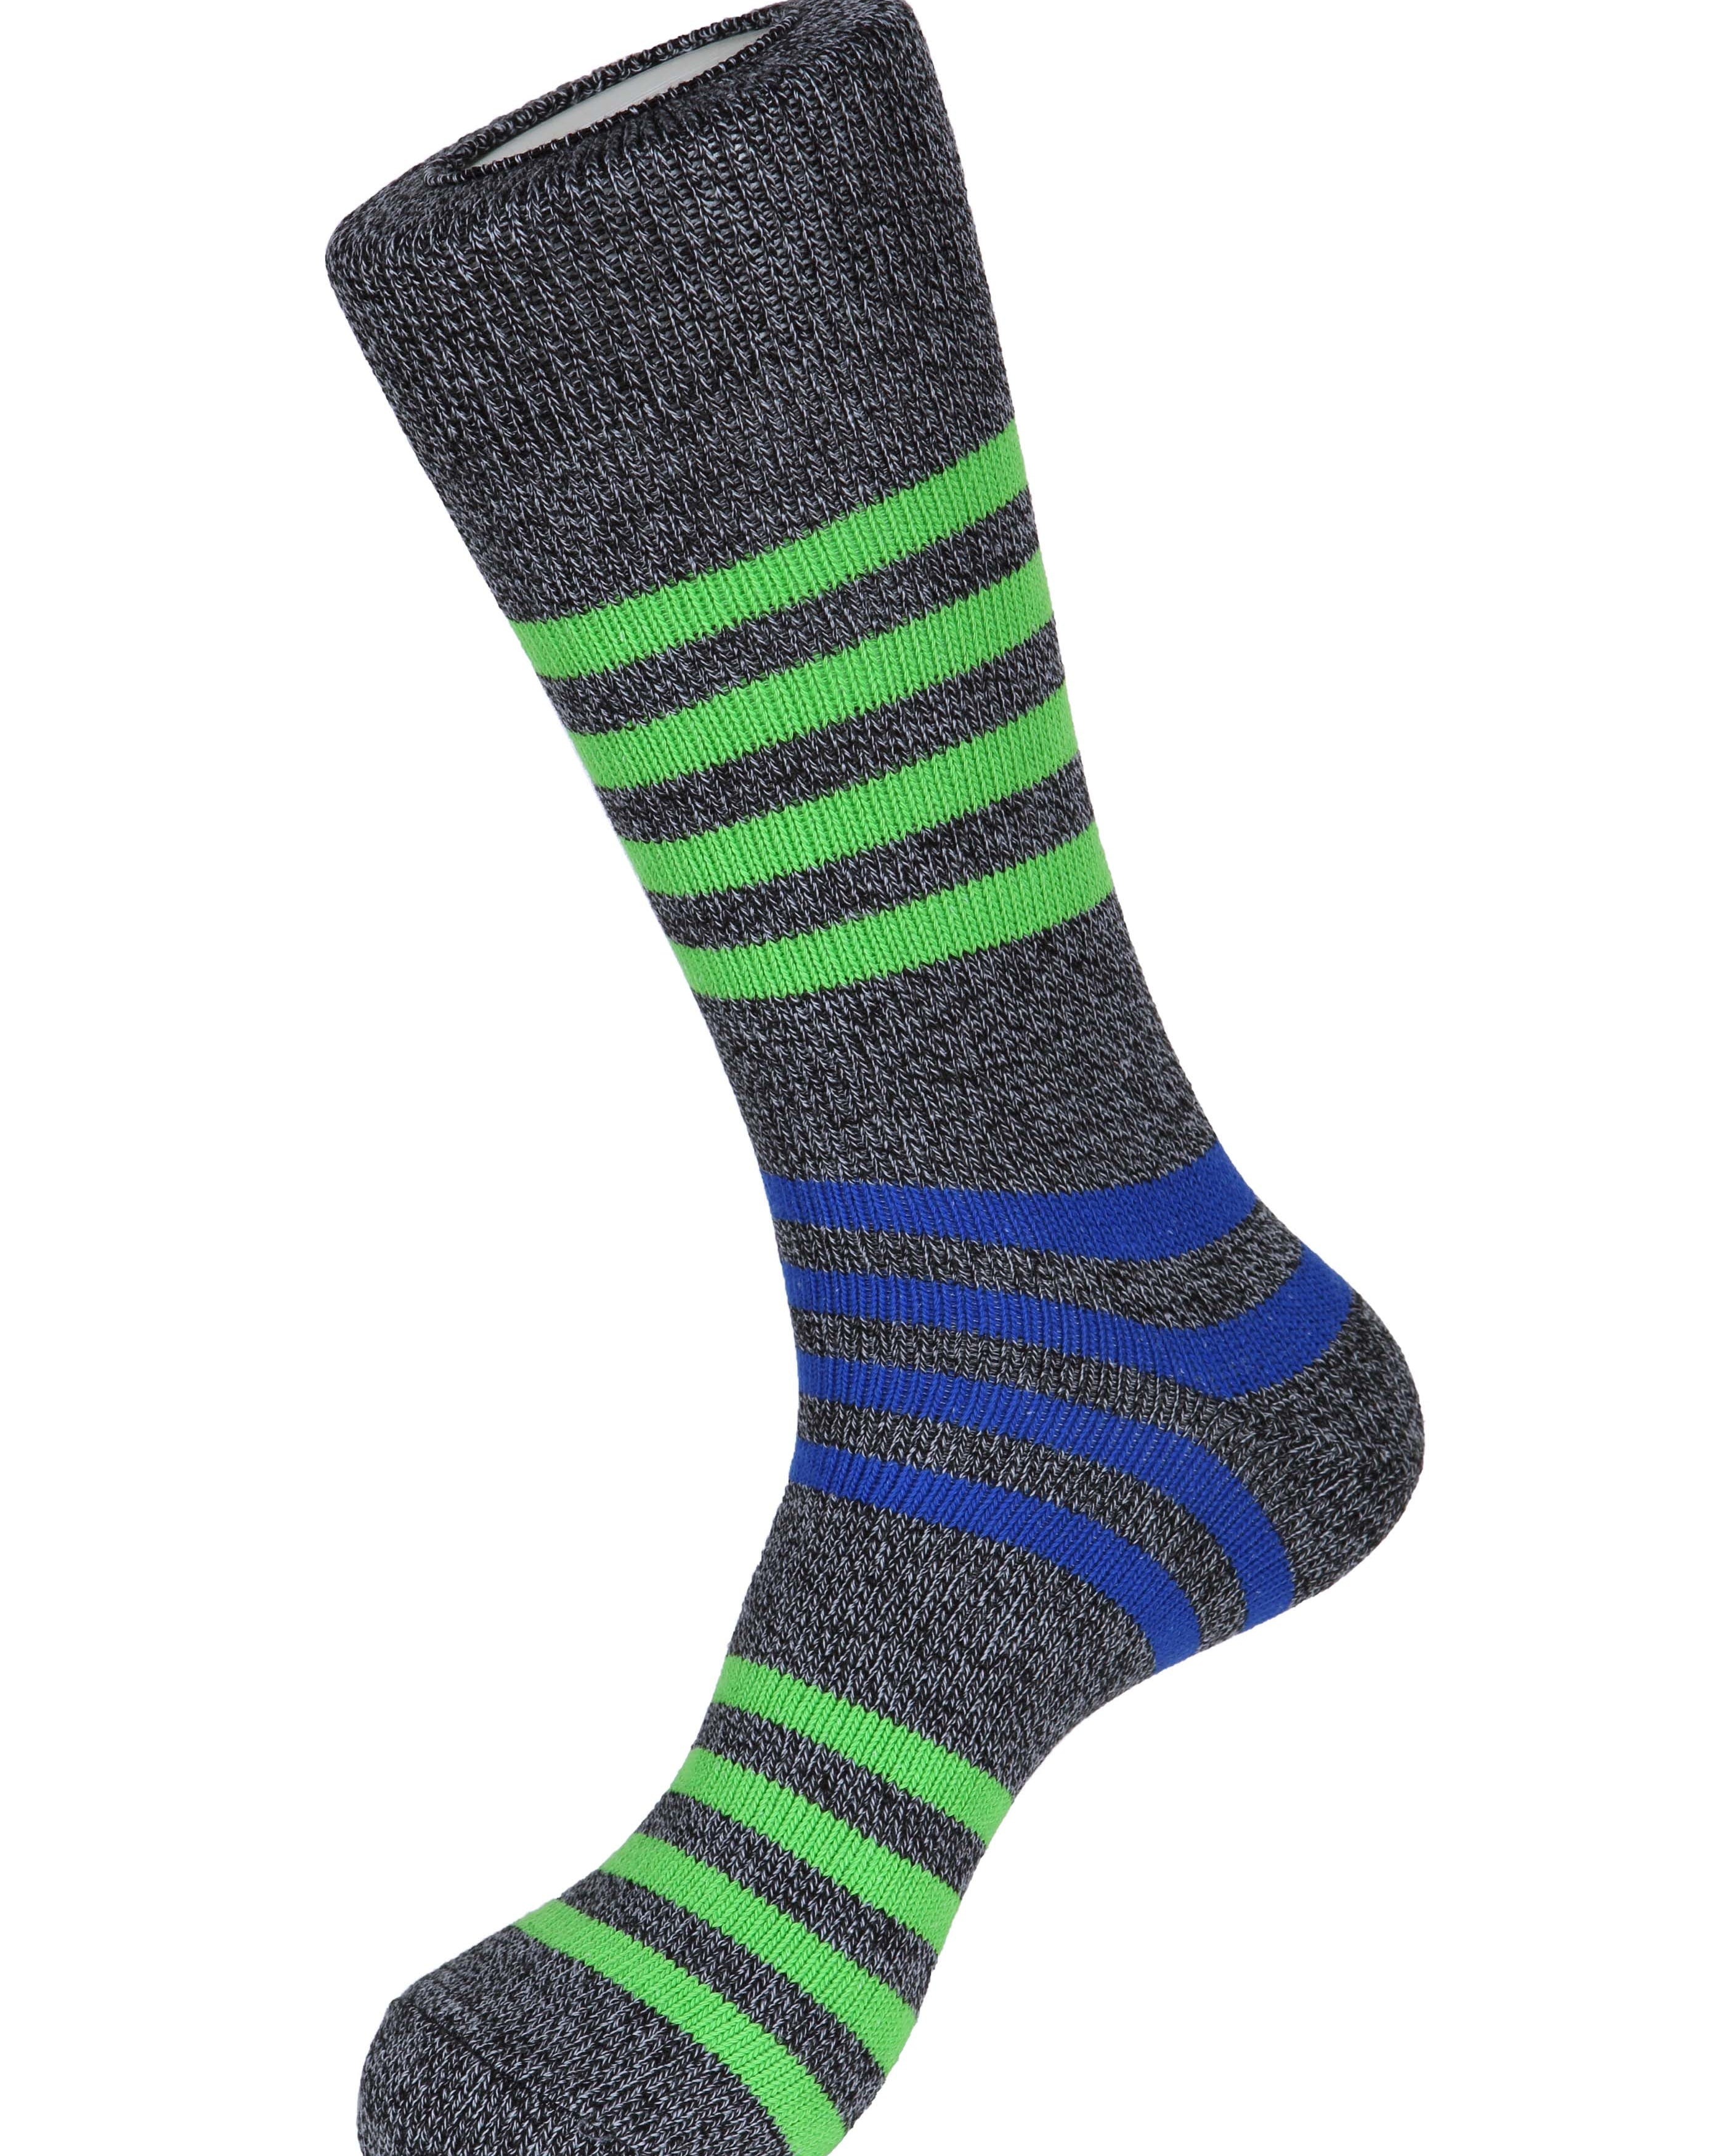 Solid Lane Stripe Socks - Men's Socks at Menzclub